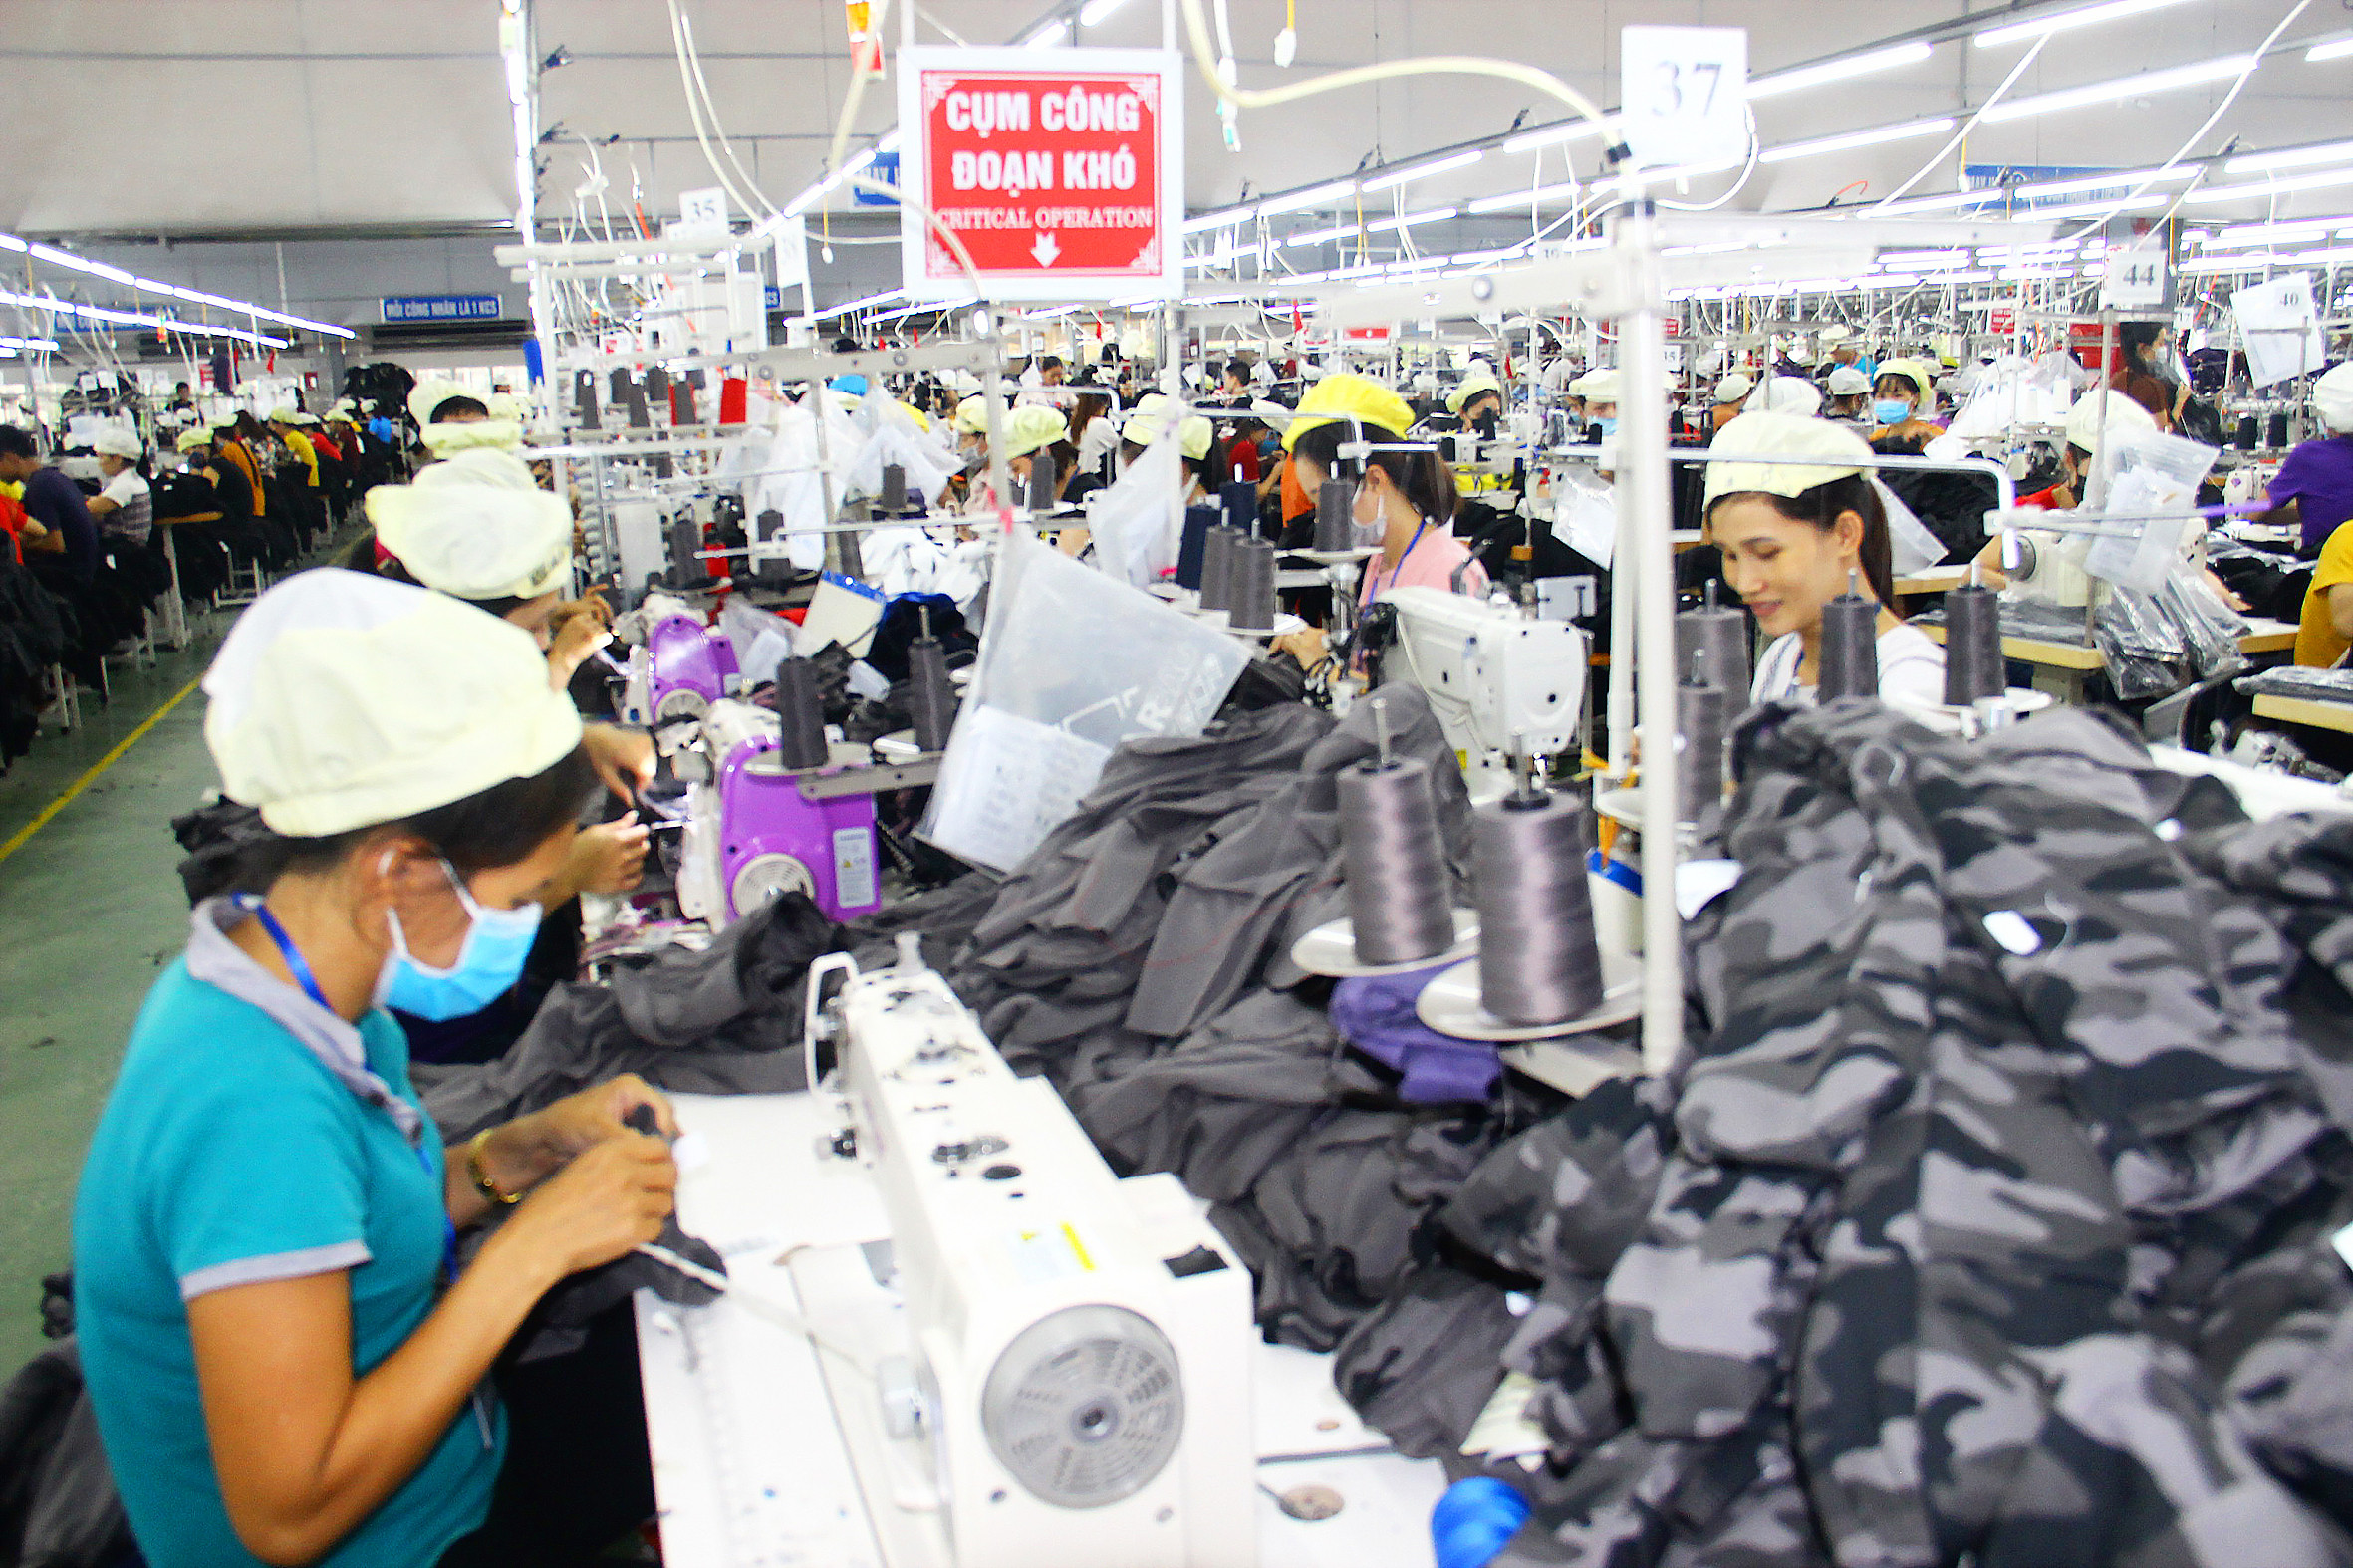 Nhà máy may Minh Anh Đô Lương thu hút nhiều lao động có việc làm ổn định. Ảnh: Hoàng Vĩnh